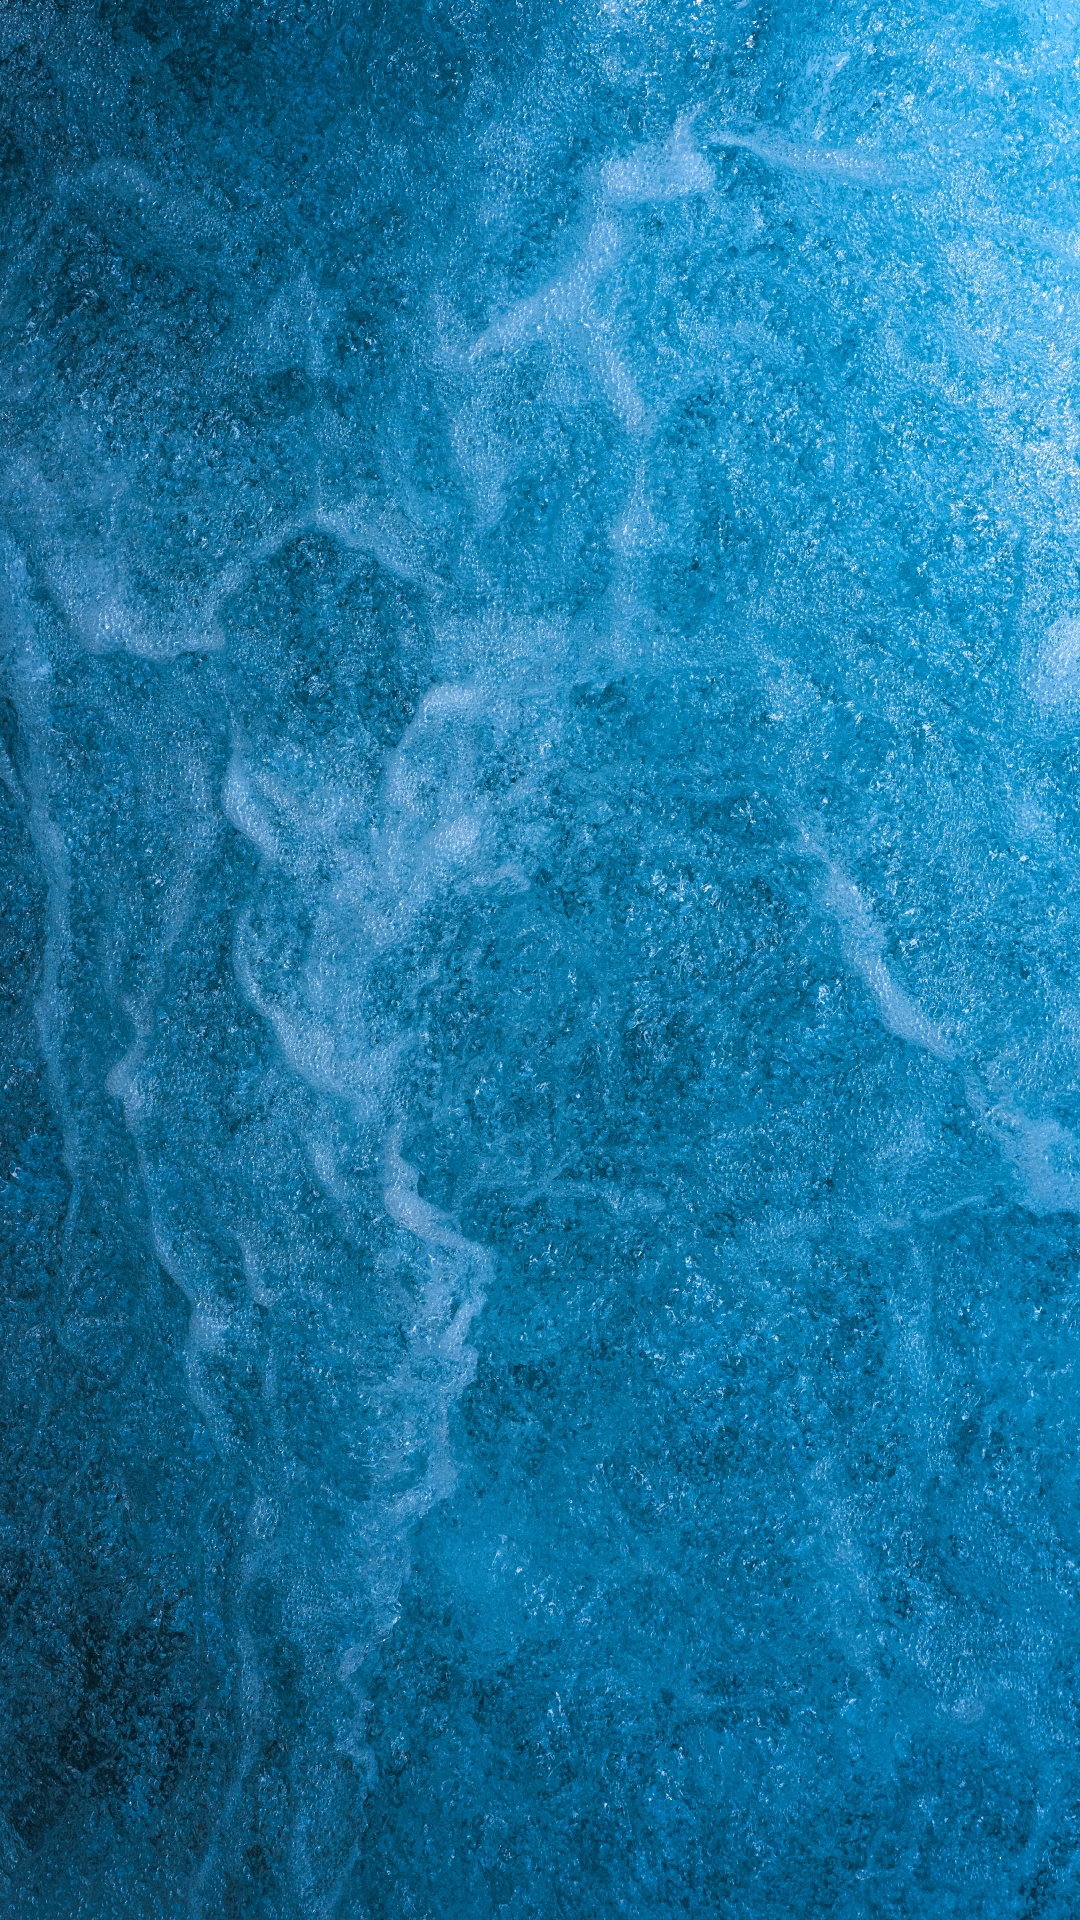 Textura, Agua, Azul, Aqua, Turquesa. Wallpaper in 1080x1920 Resolution